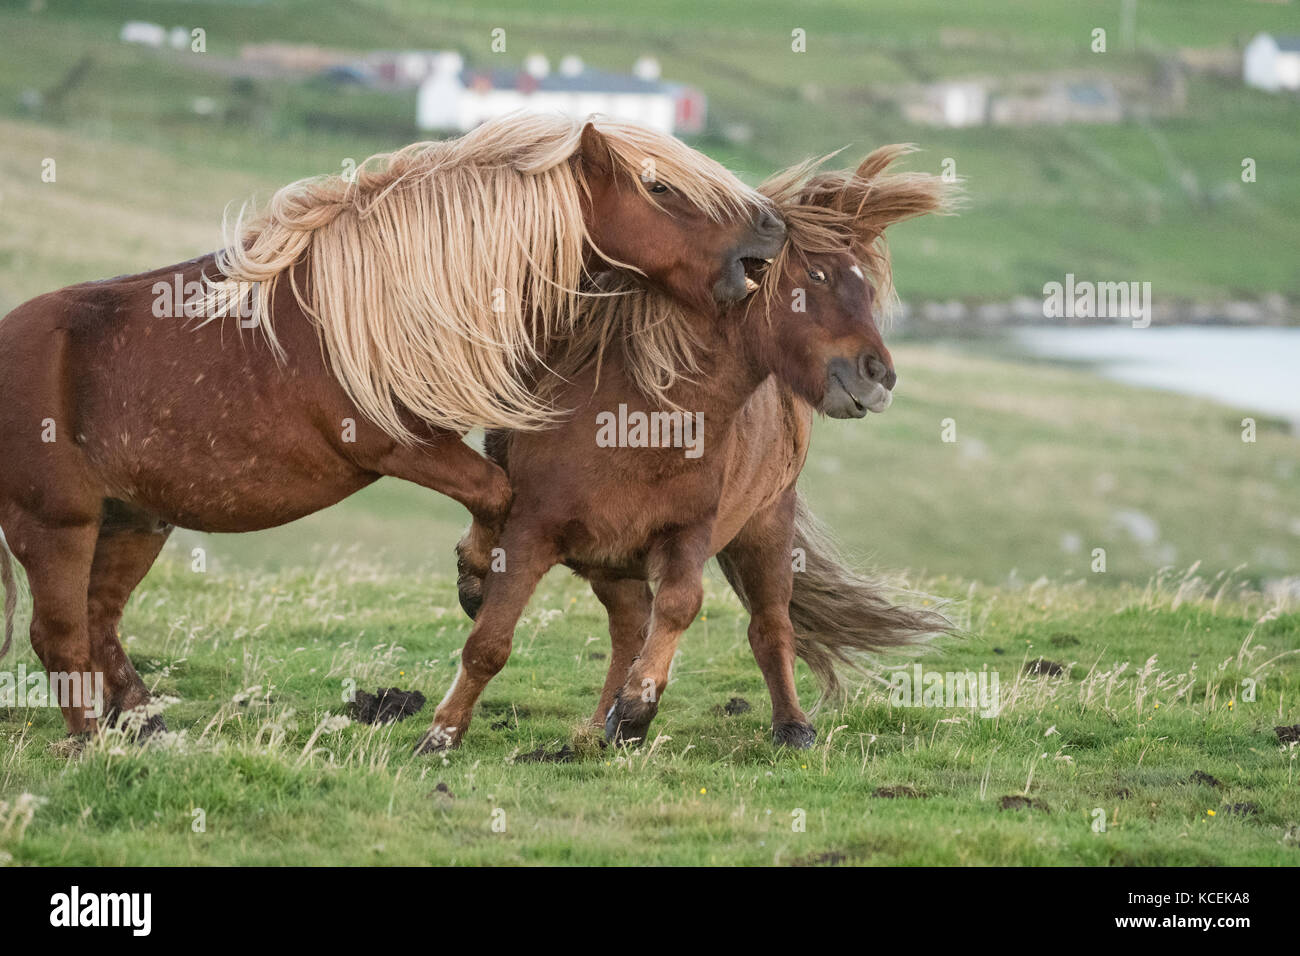 Les chevaux jouent au combat - les chevaux islandais jouent au combat dans les îles Shetland, en Écosse, au Royaume-Uni Banque D'Images